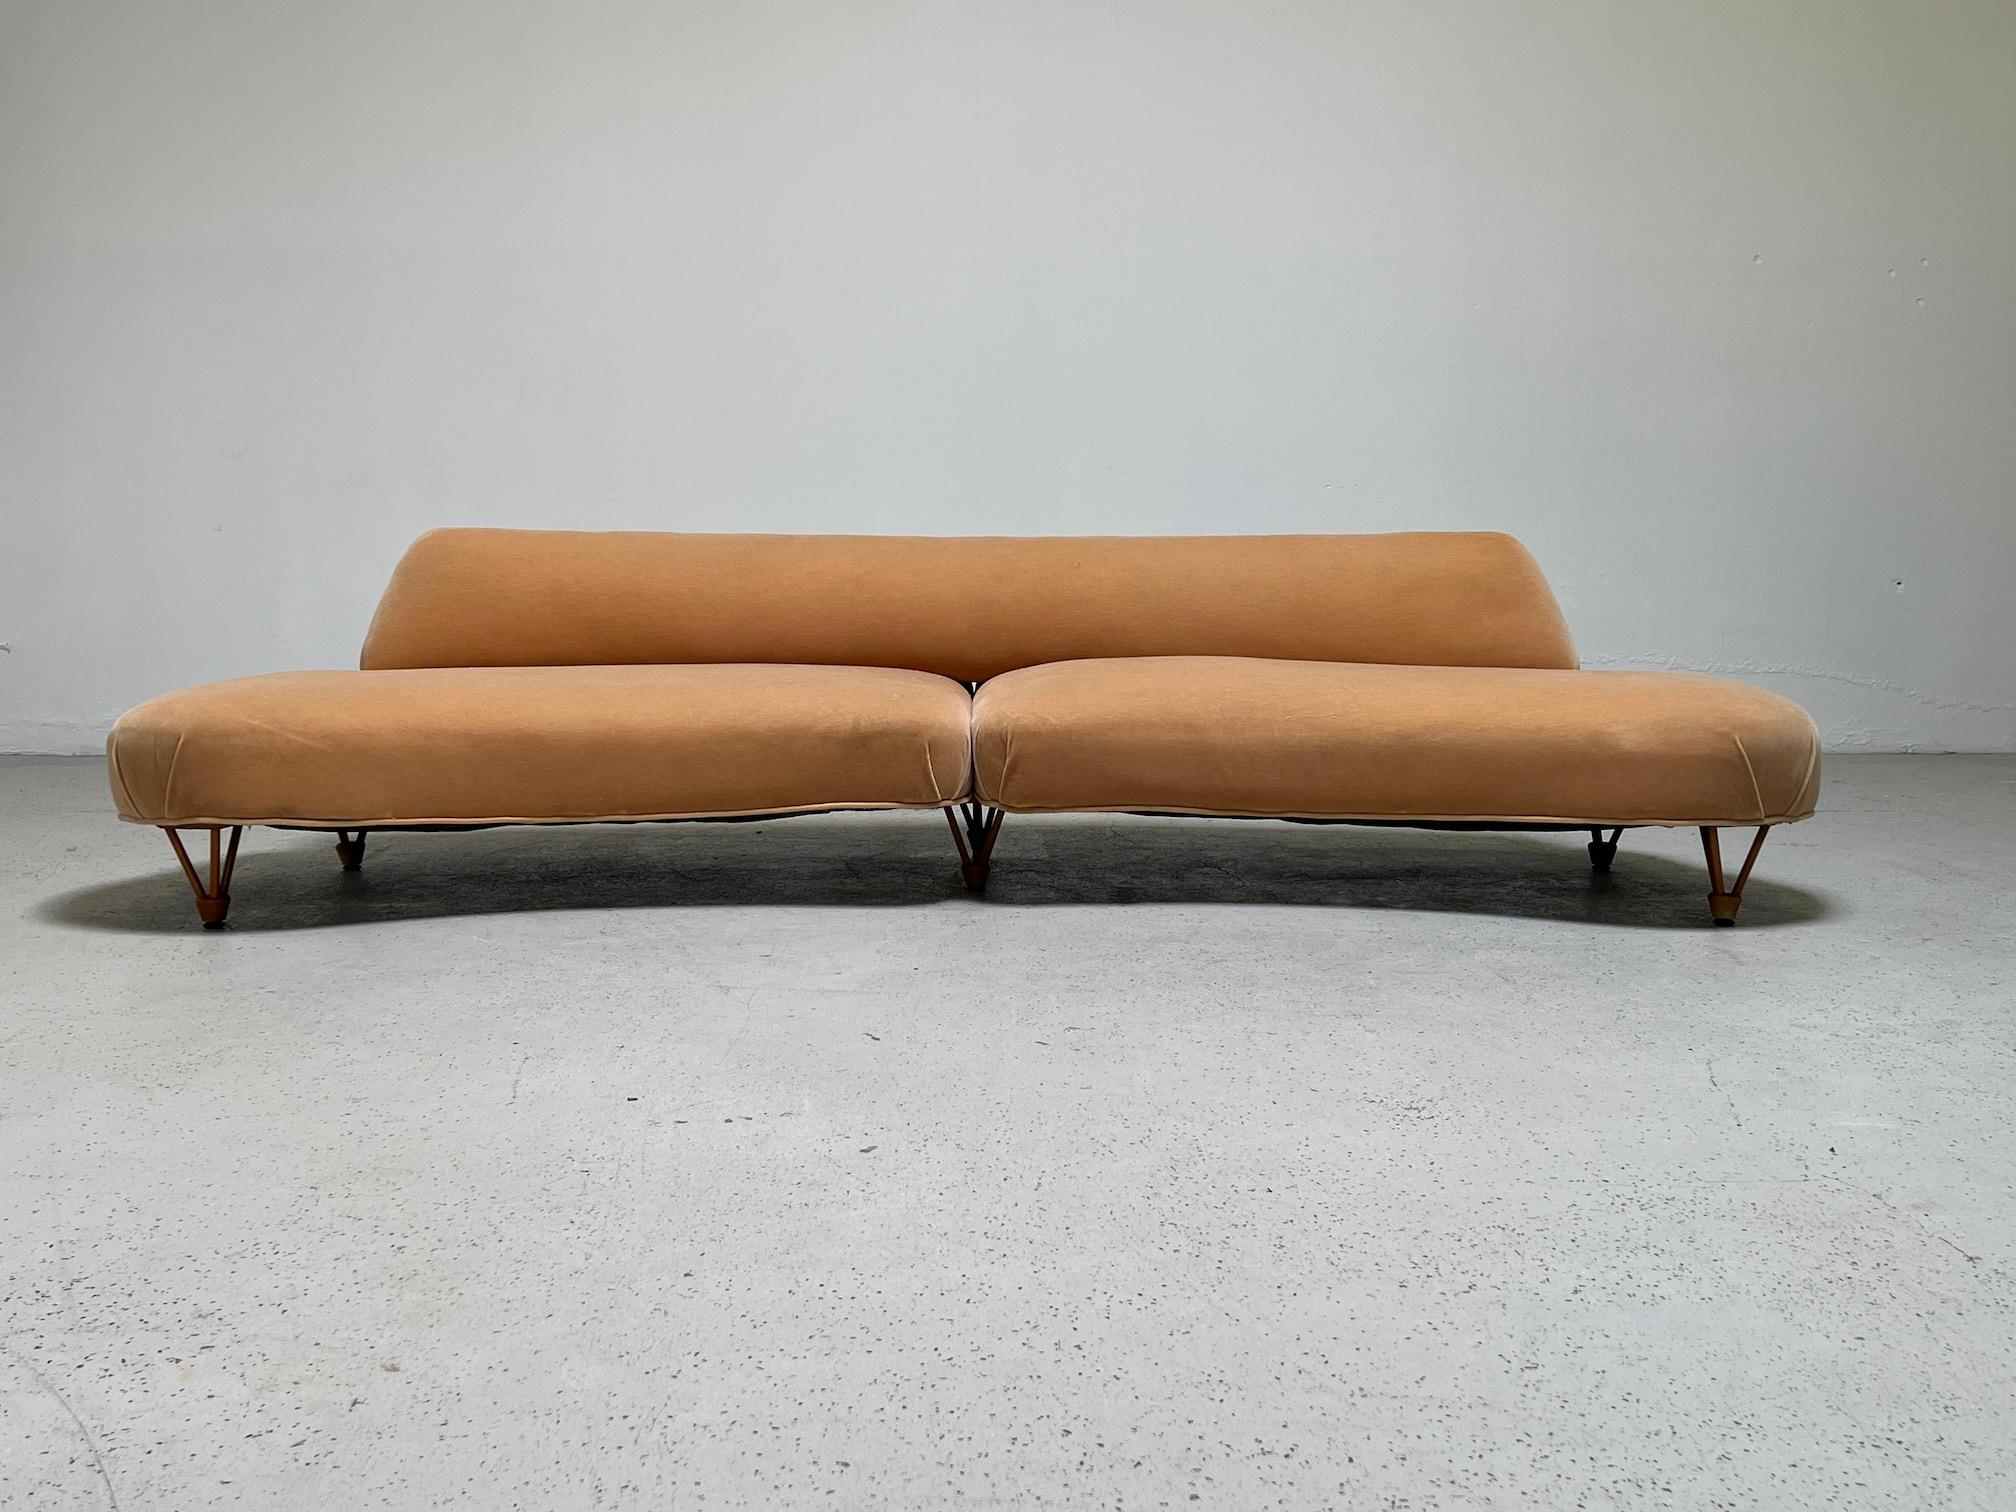 Ein sehr interessantes, organisches Sofa mit geschnitzten Holzbeinen im hohen Stil. Die Rückseite lässt sich abnehmen und die beiden Seiten lassen sich für einen einfachen Transport trennen. Gegenwärtig in schönem Zustand mit Original-Mohair